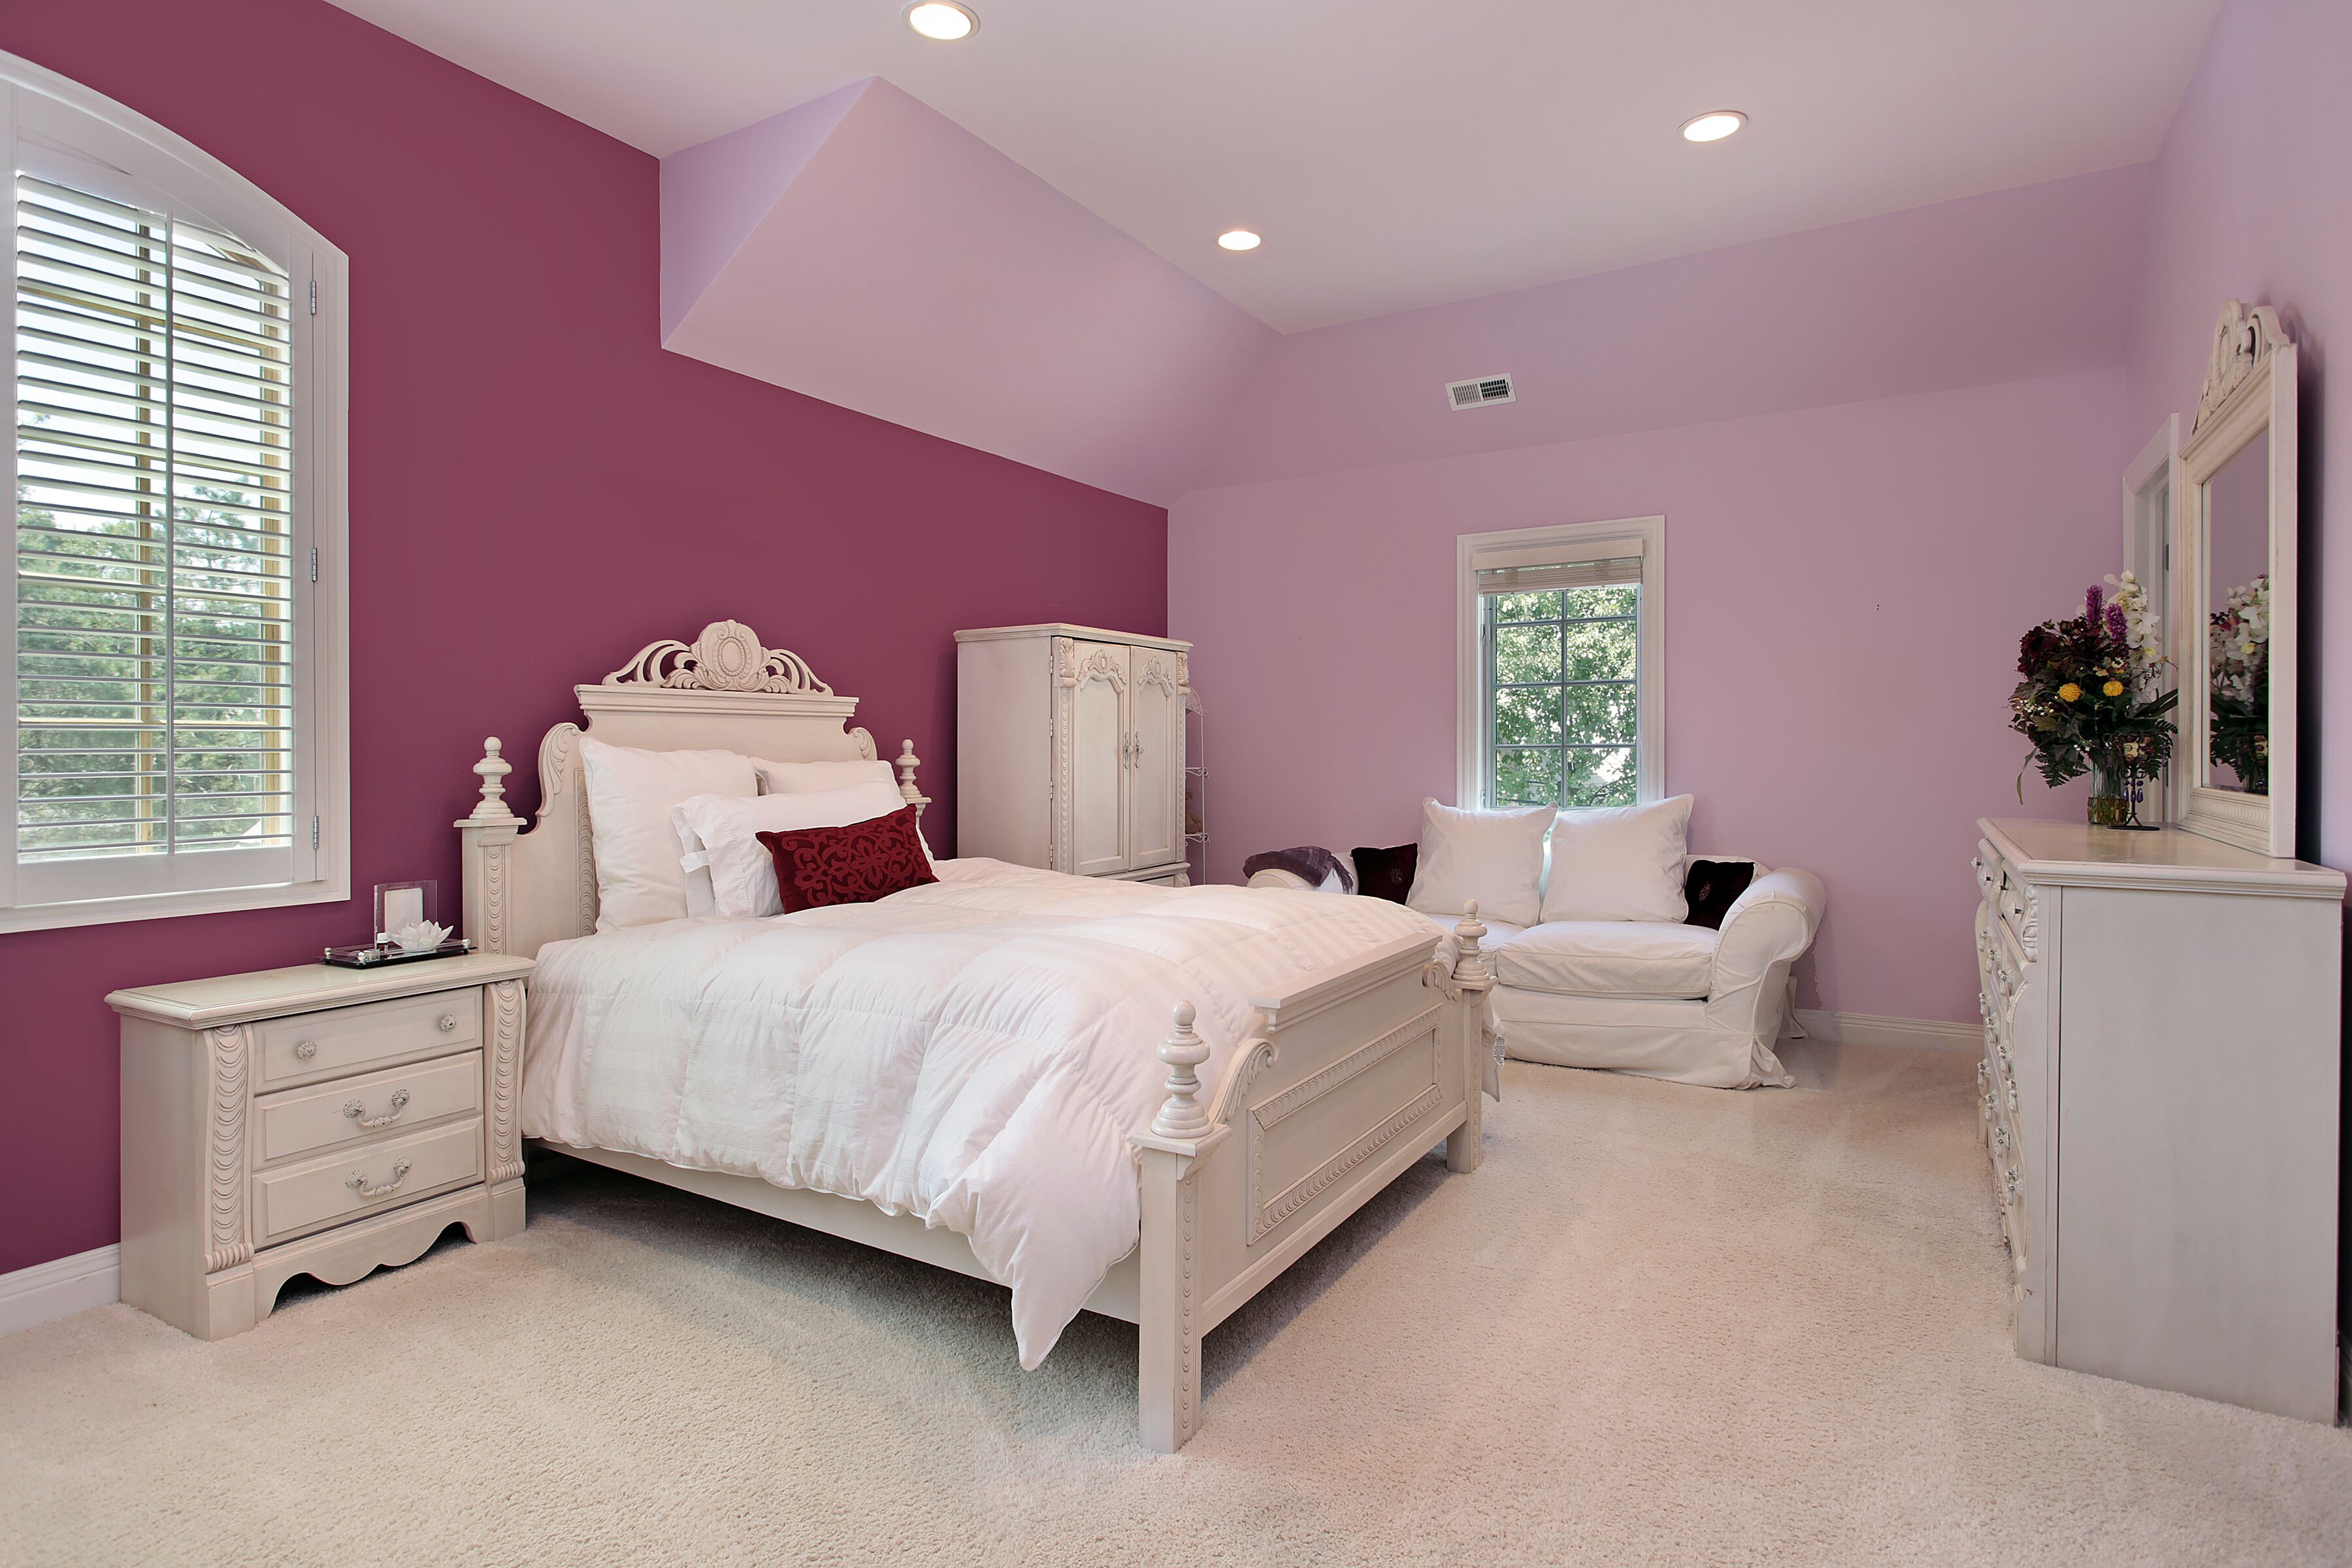 Краски под обои цвета. Цвет стен в спальне. Варианты покраски комнаты. Красивый цвет стен. Покрашенные стены в спальне.